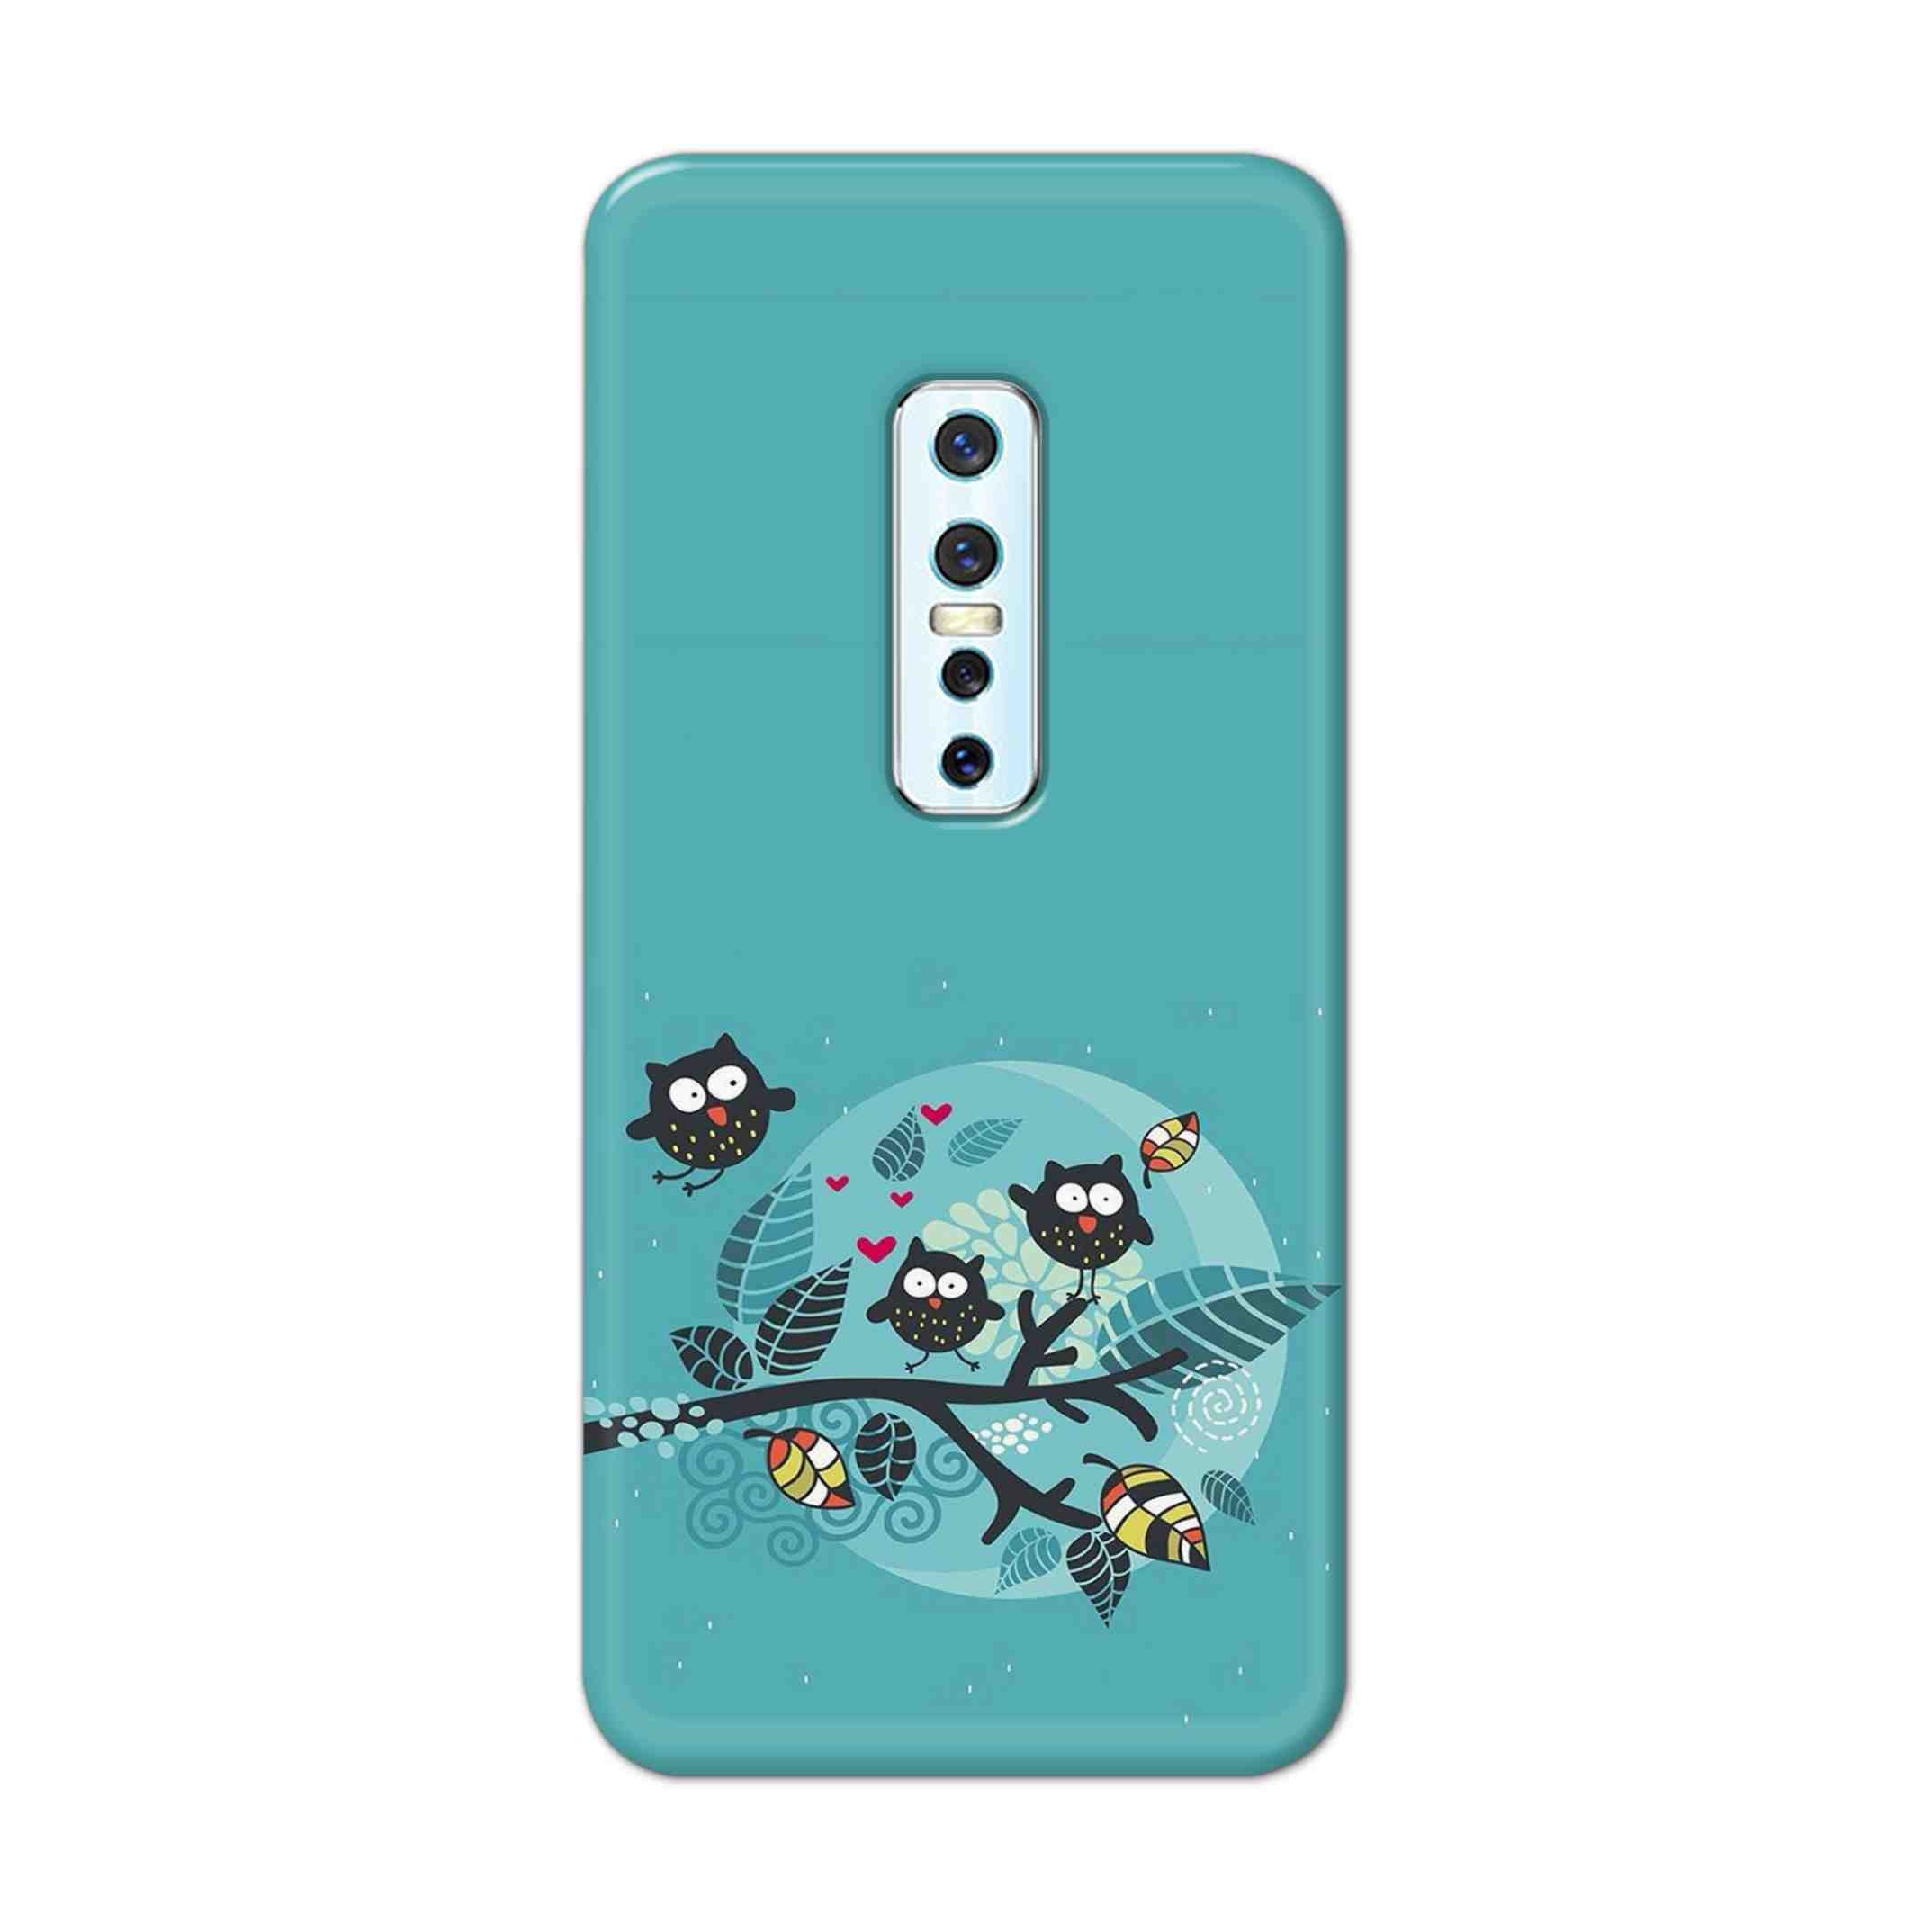 Buy Owl Hard Back Mobile Phone Case Cover For Vivo V17 Pro Online